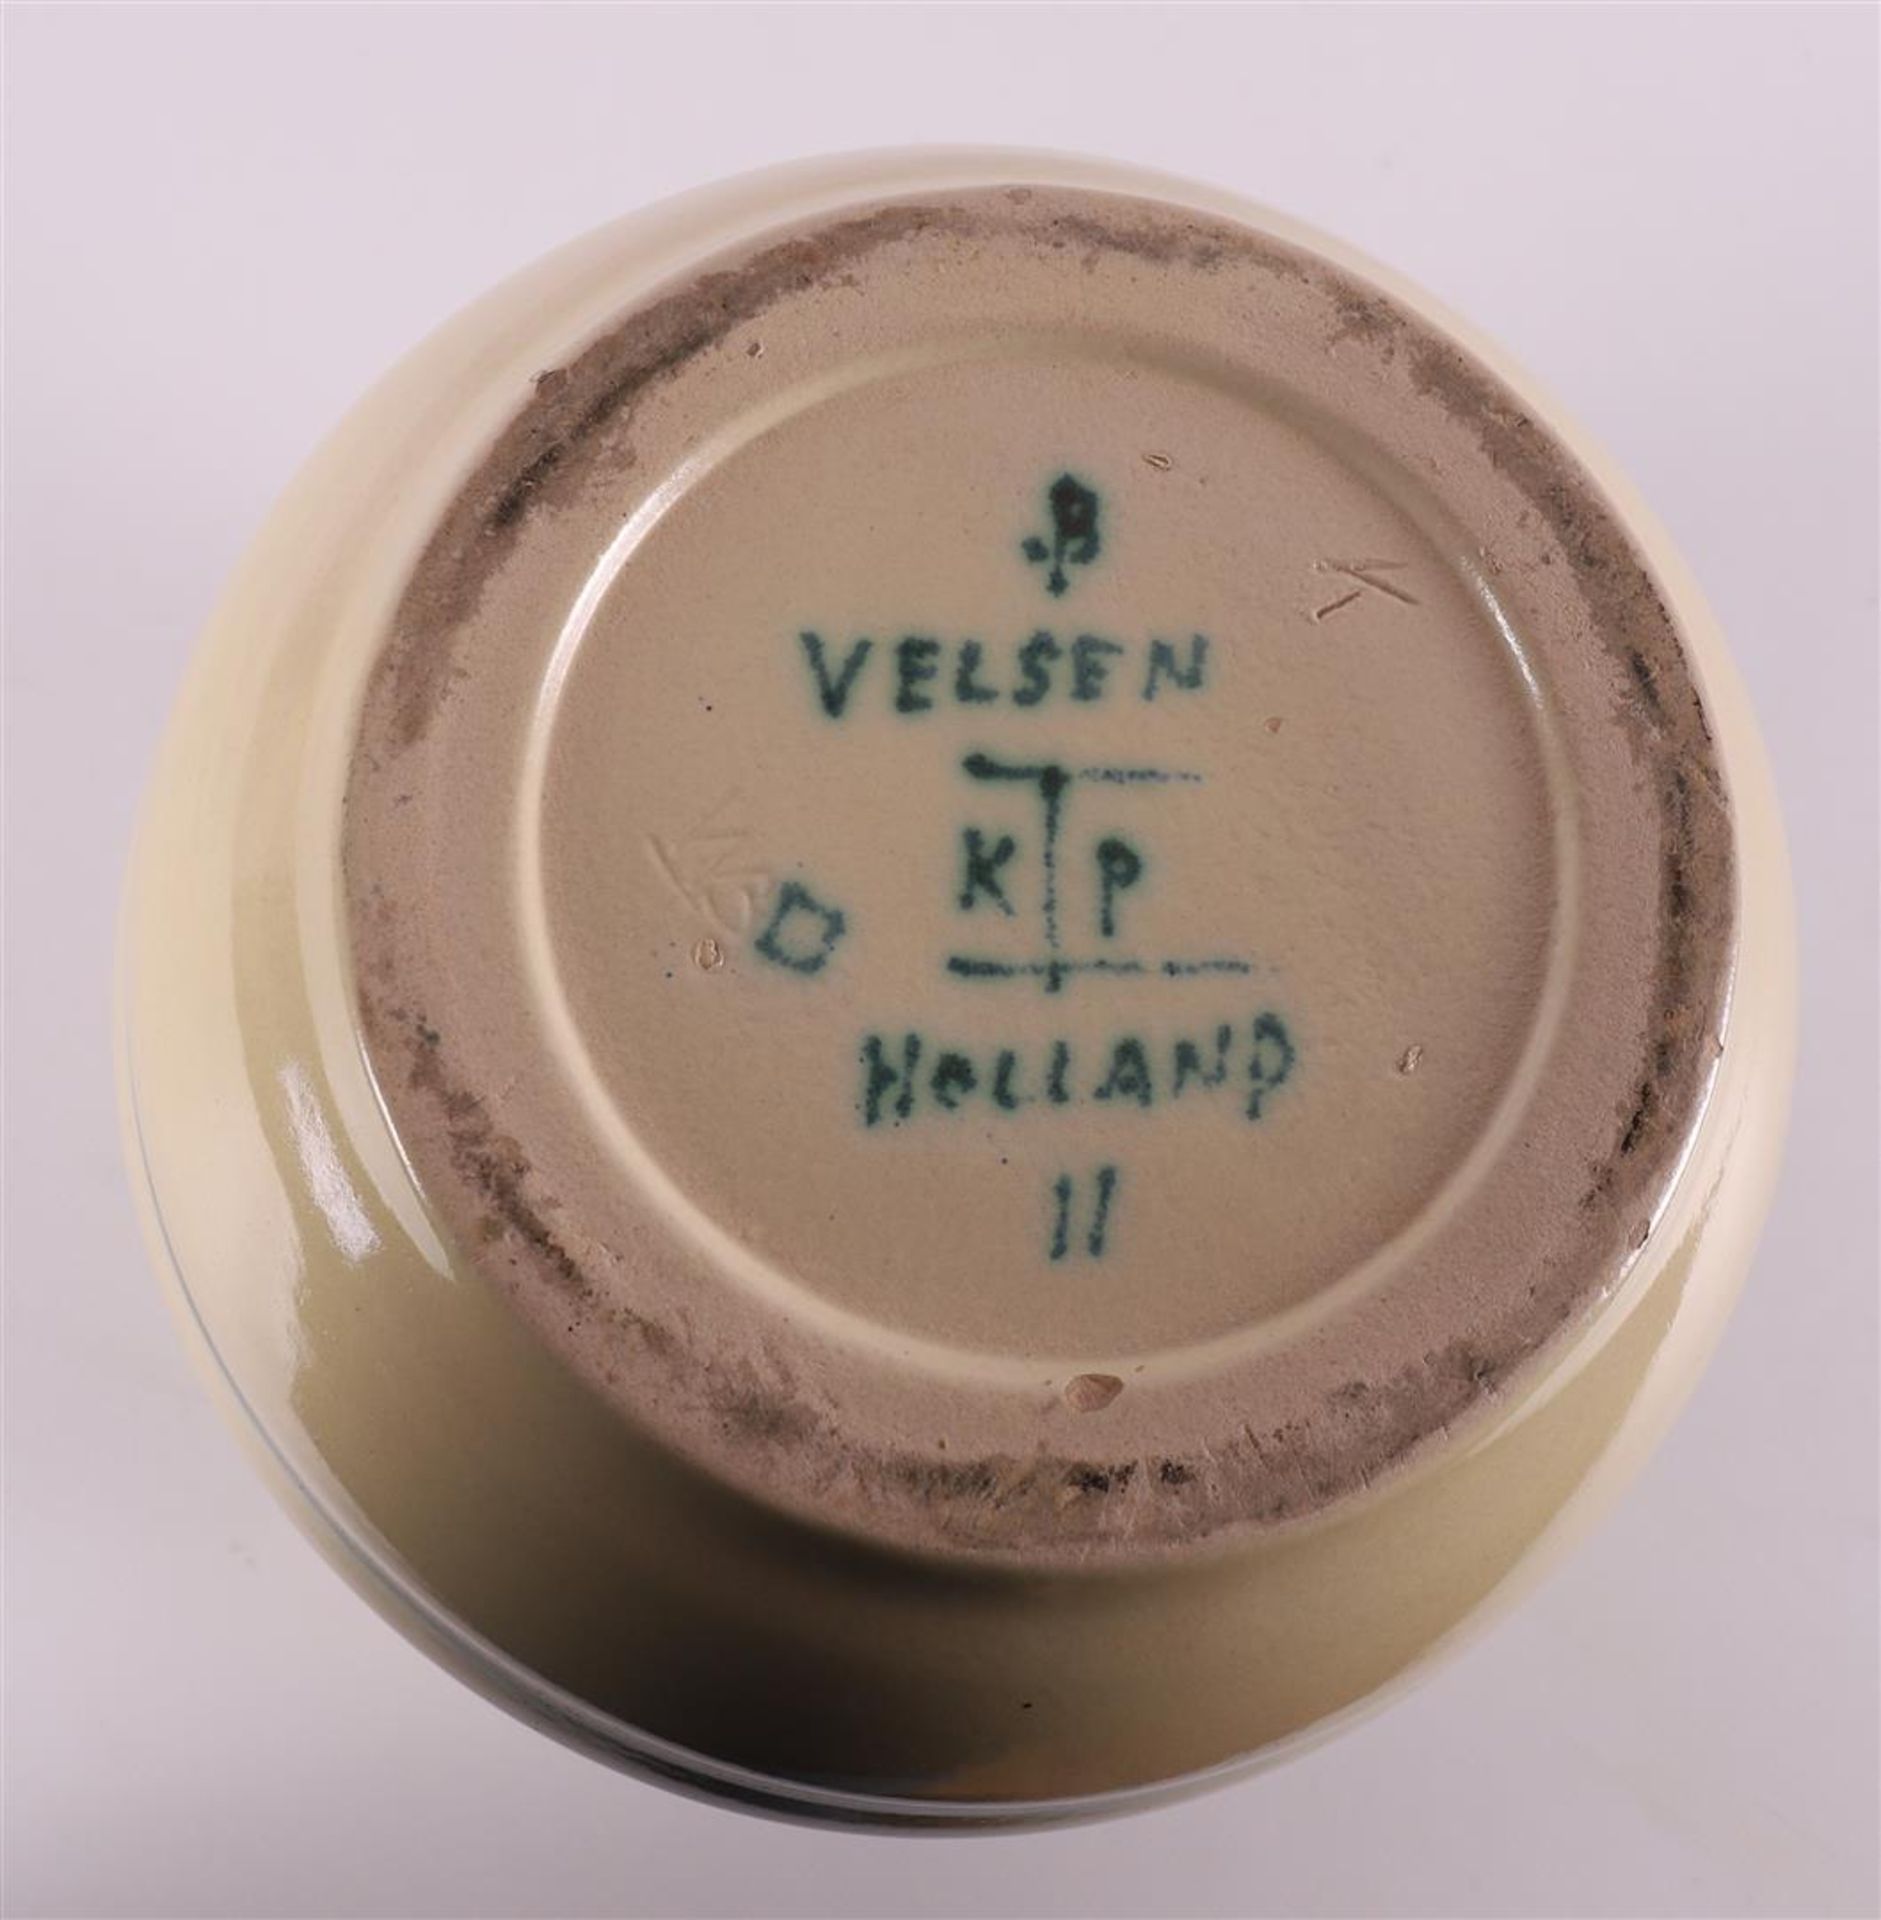 A pottery vase, Potterie KTP Kennemerland Velsen, 1929 - 1932 - Image 7 of 7